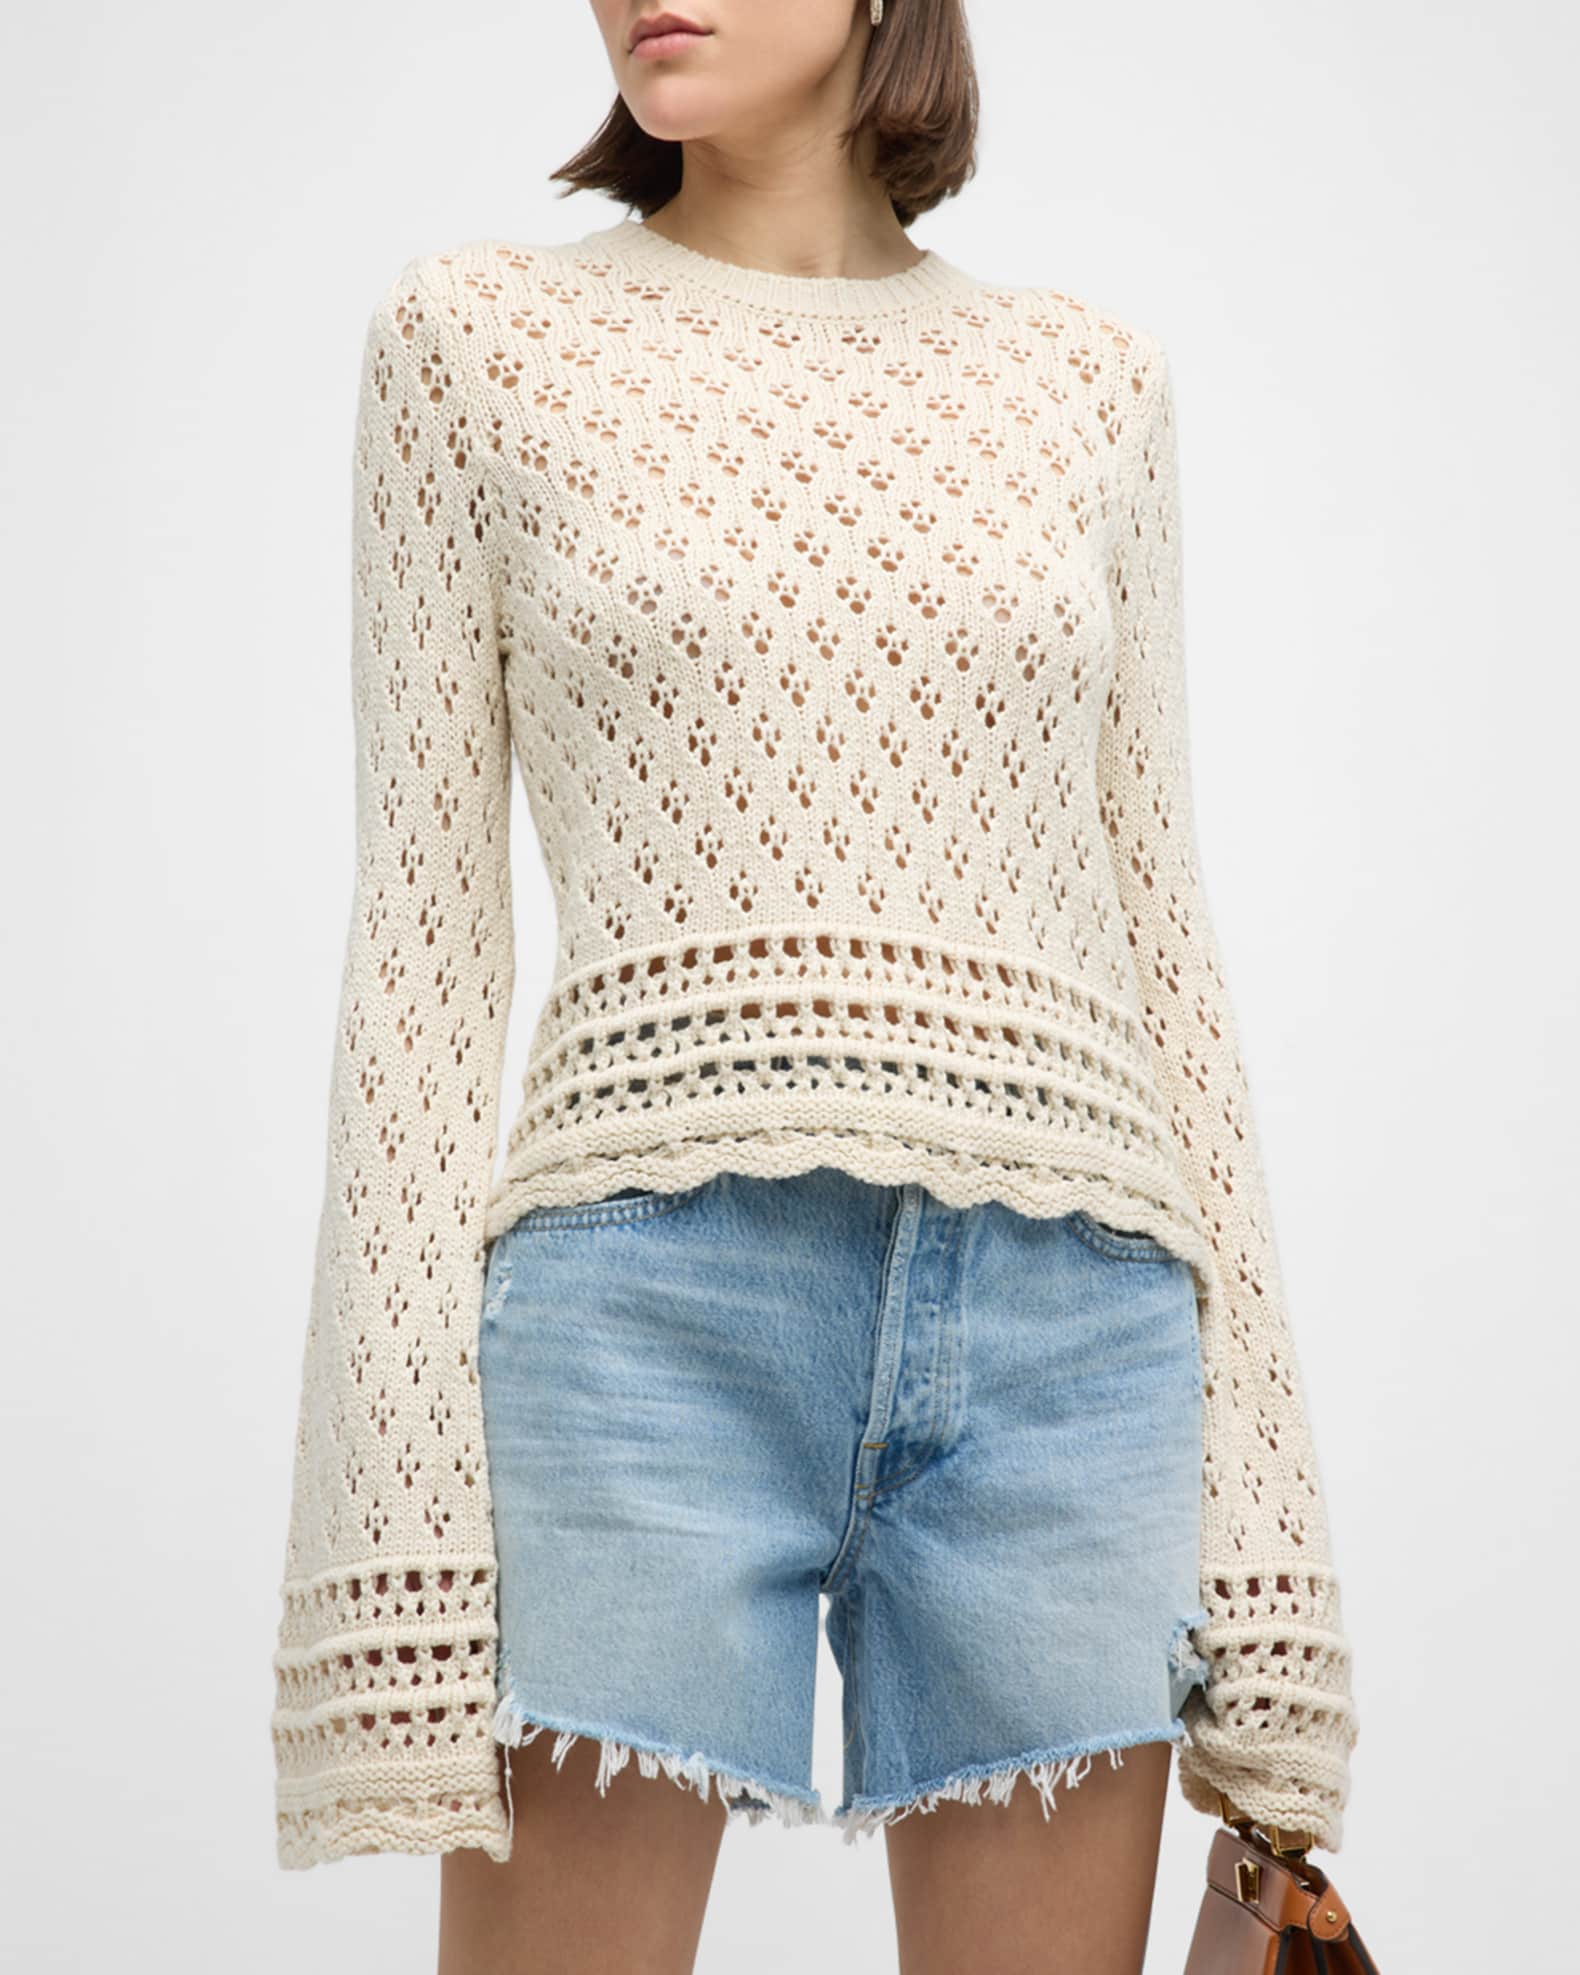 White Crochet Long Sleeve Top